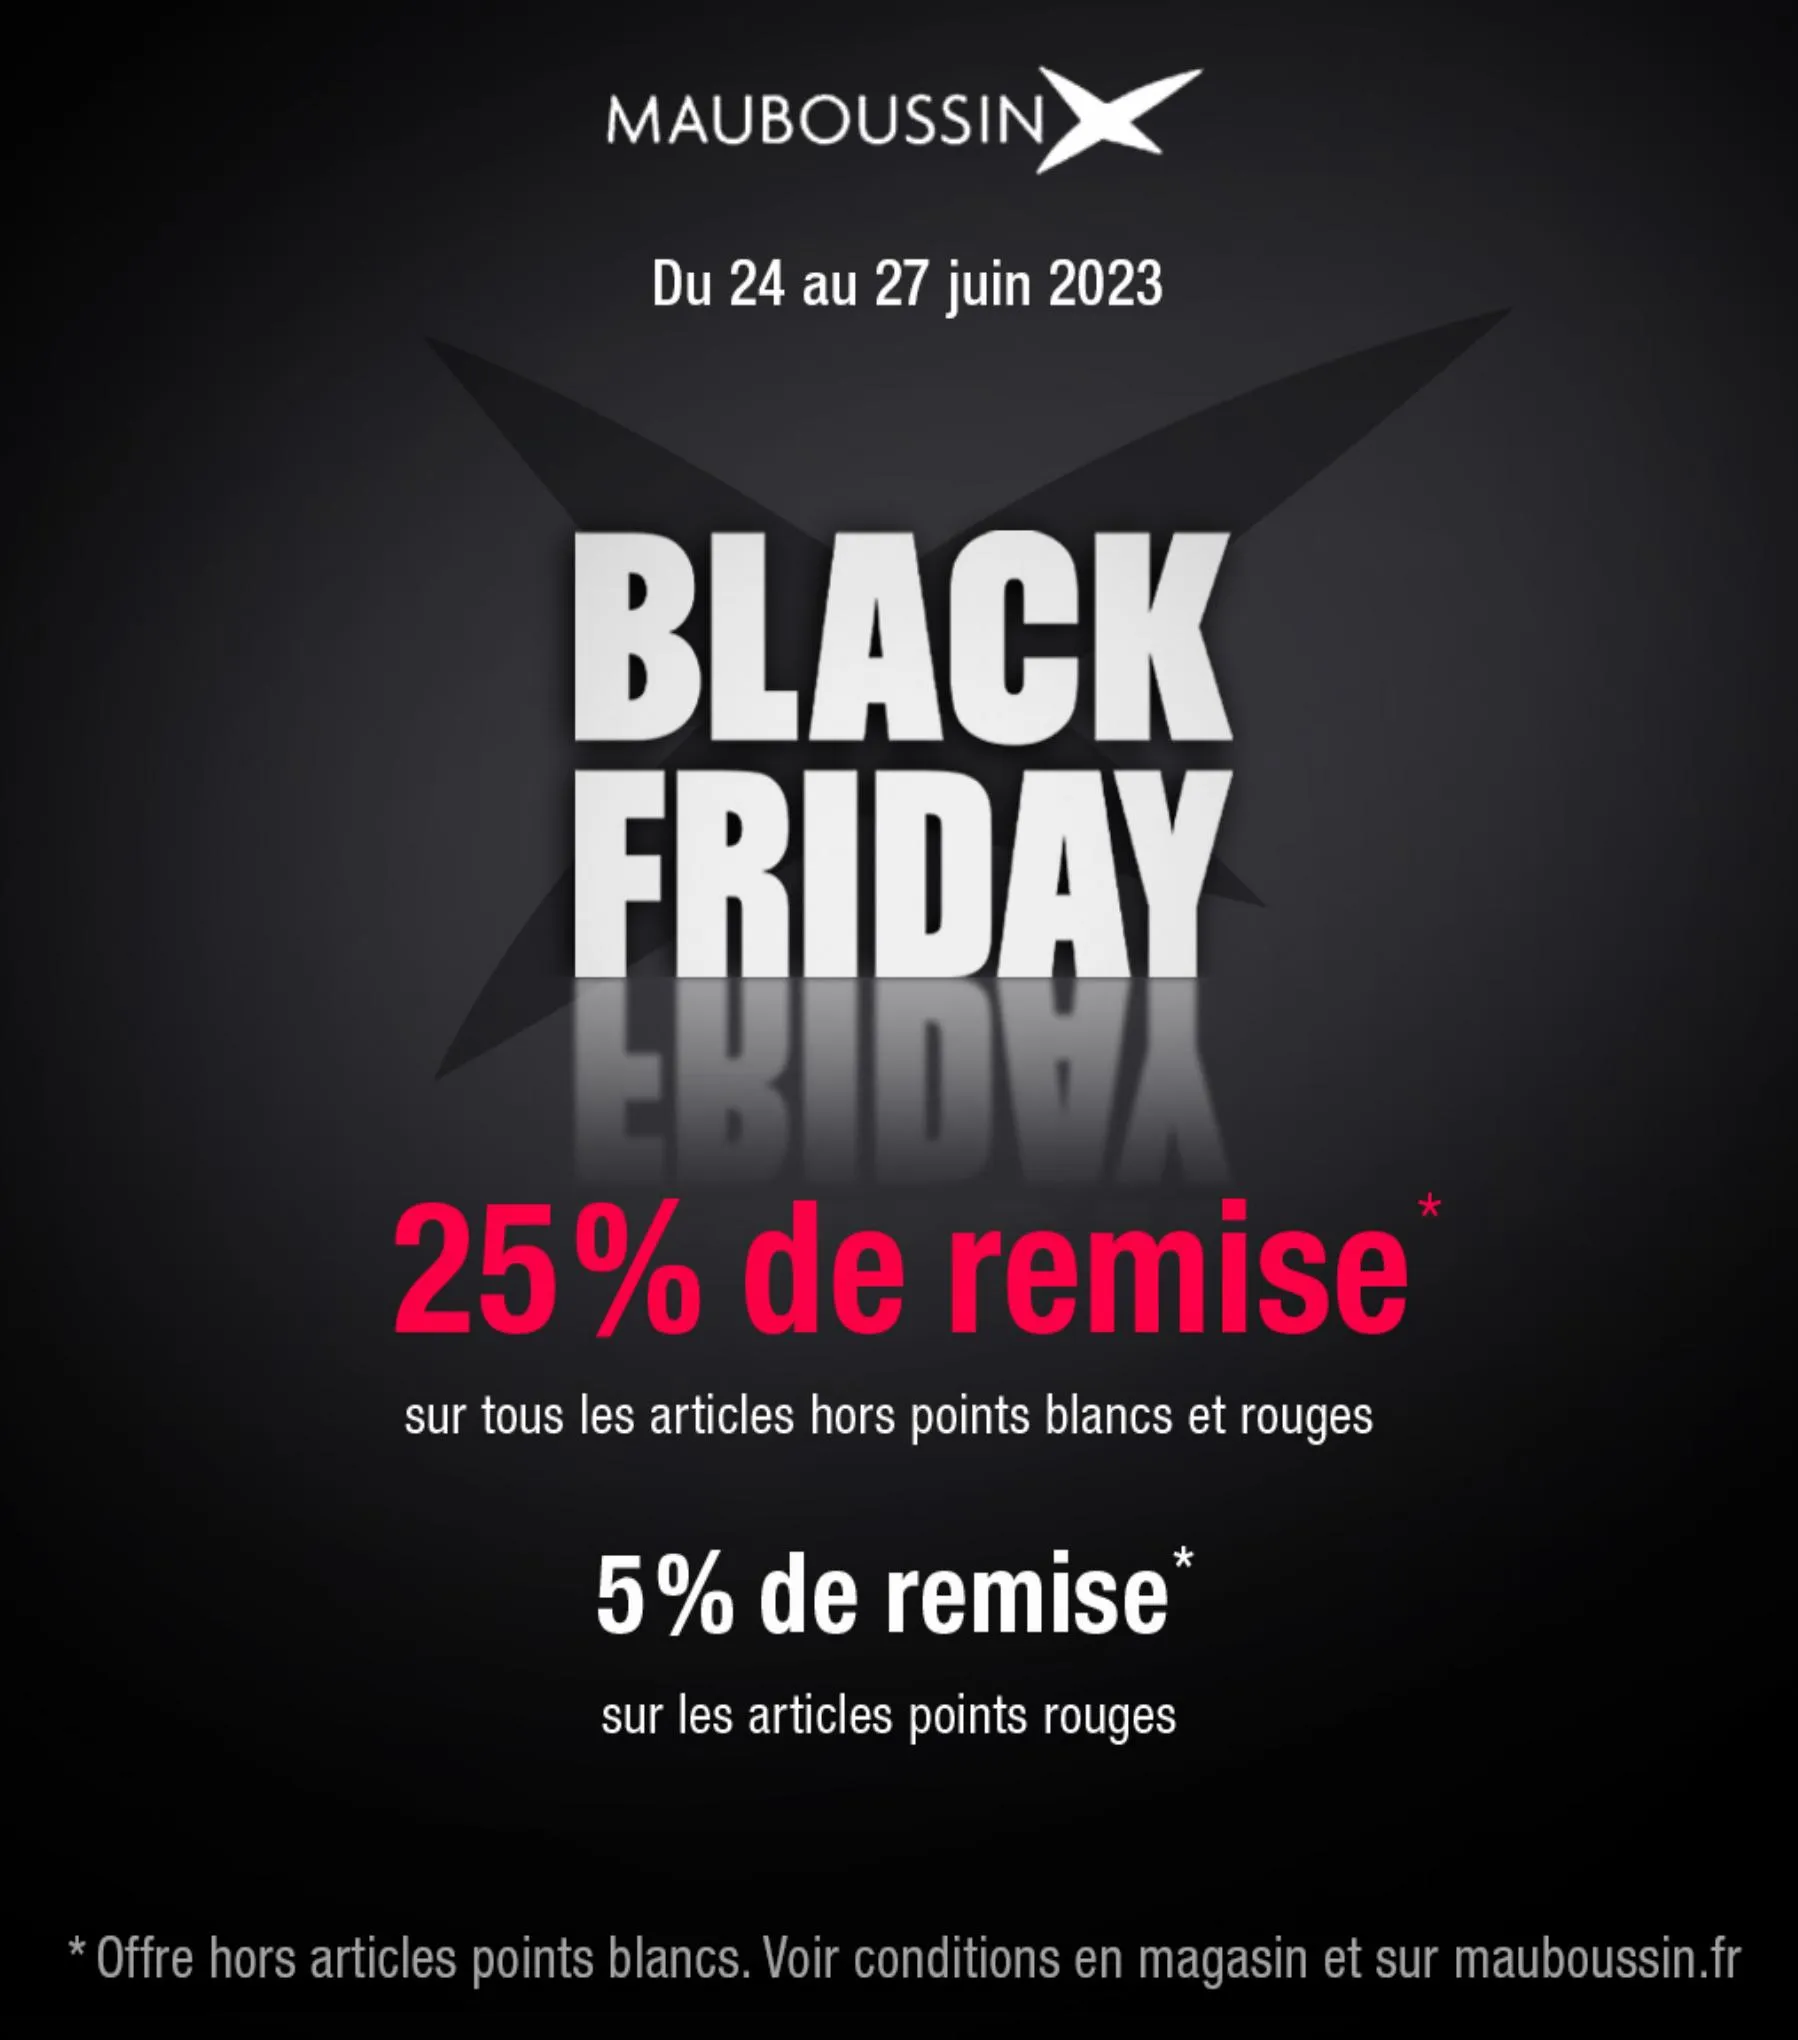 Catalogue Black Friday 25% de Remise*, page 00001